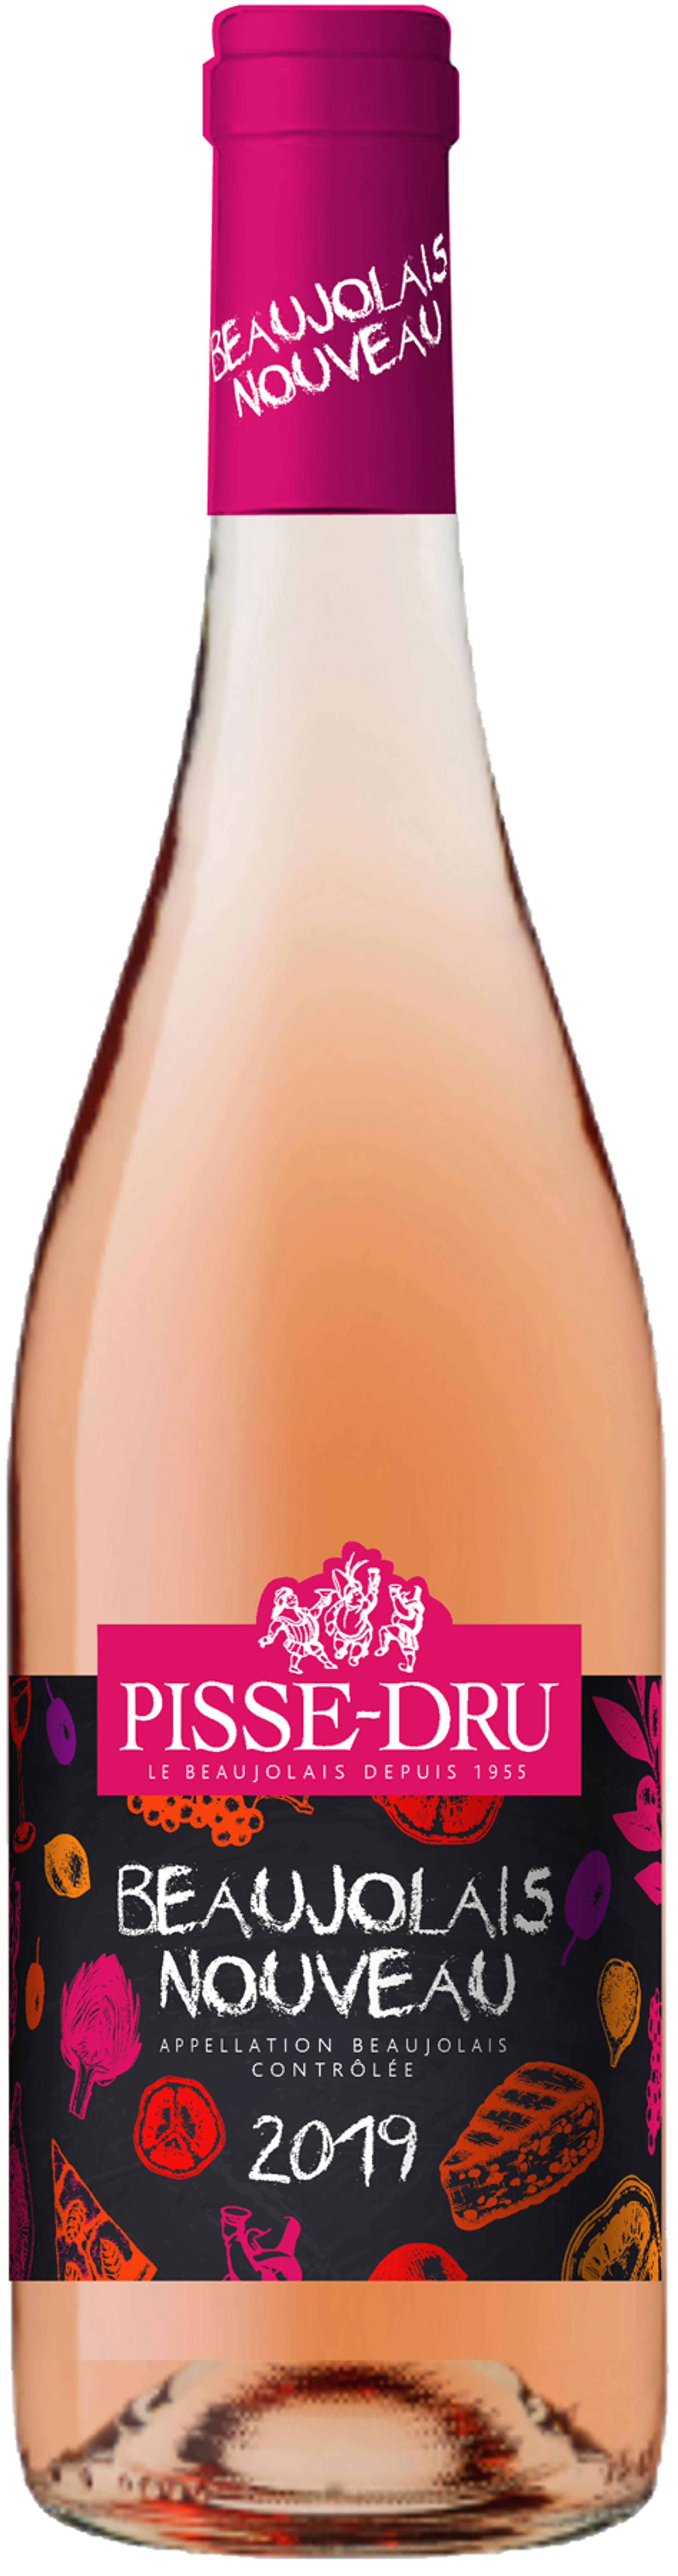 Pisse-Dru Beaujolais nouveau rosé